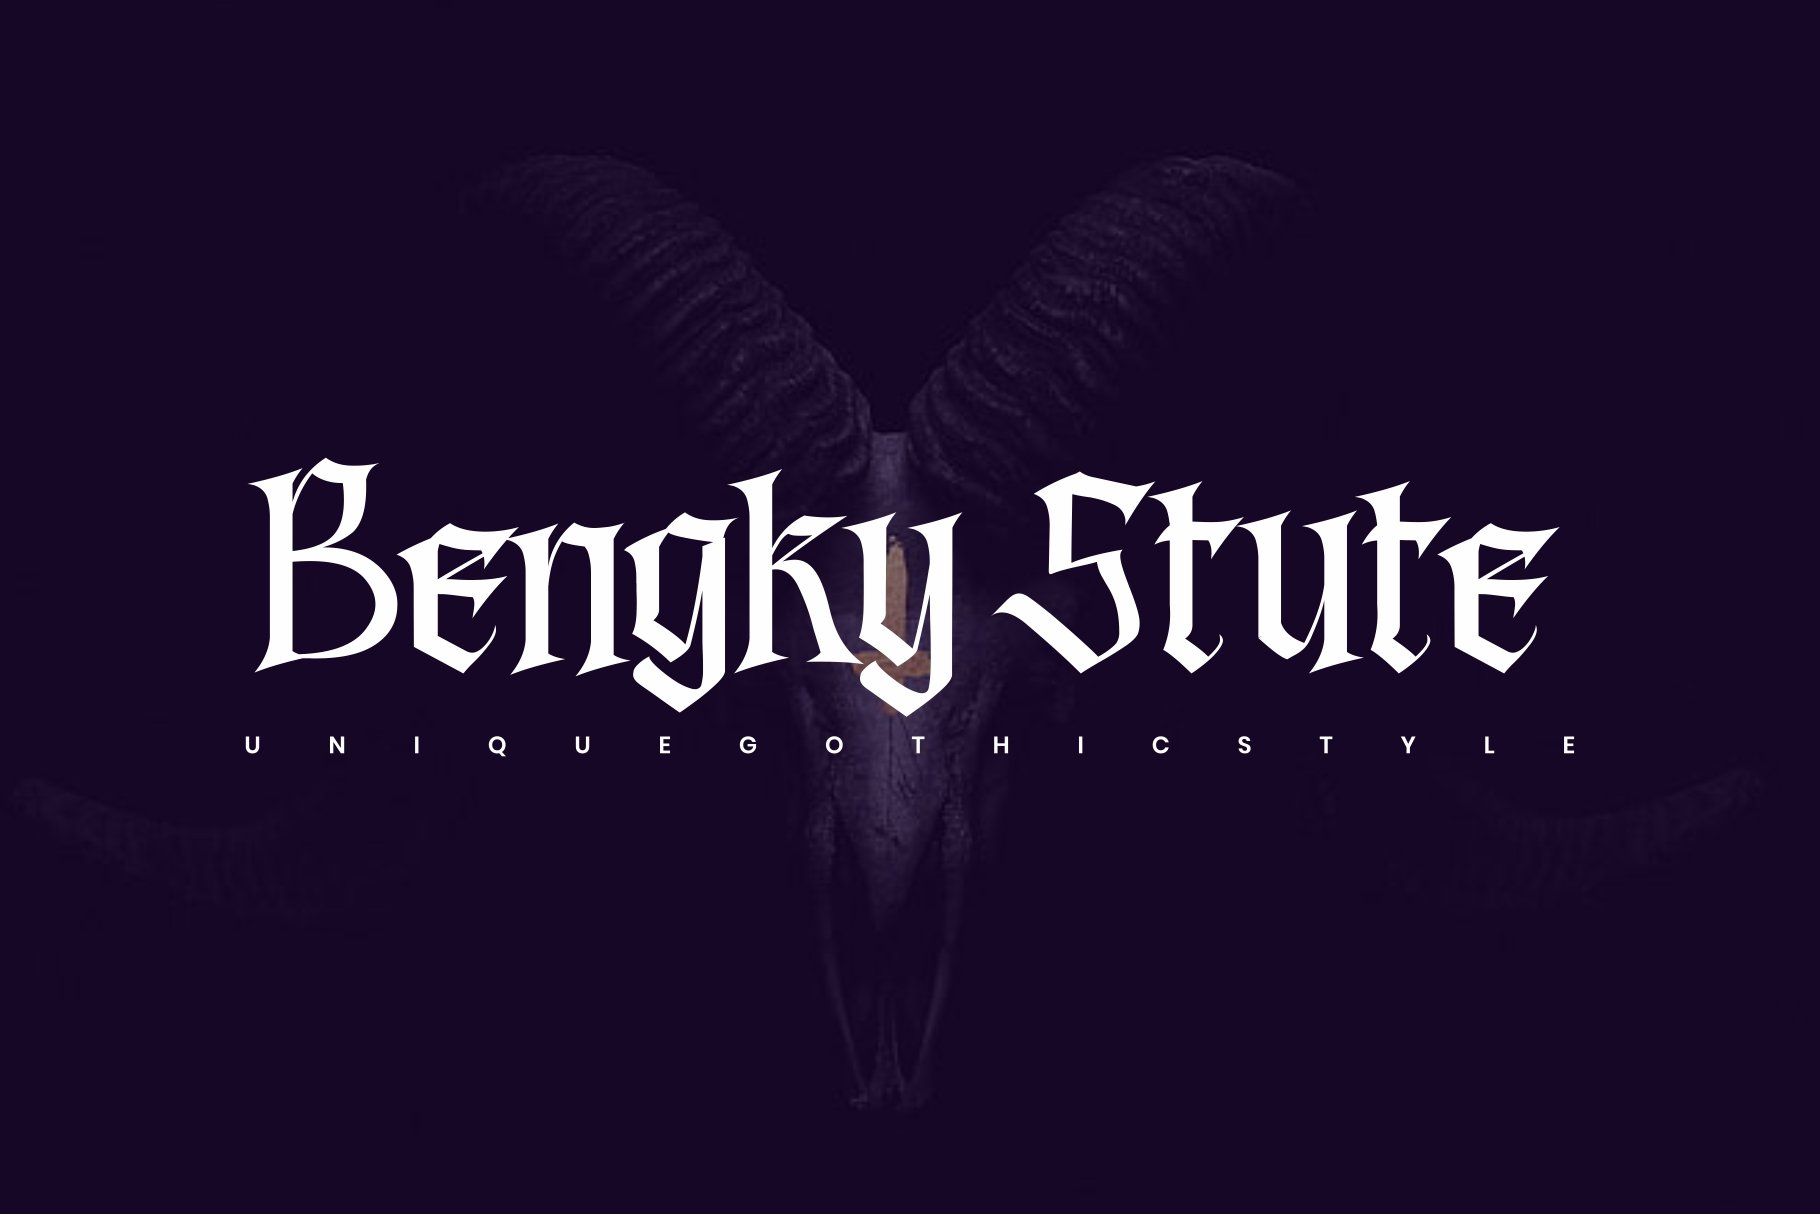 Bengky Stute - Blackletter Fontpreview image.